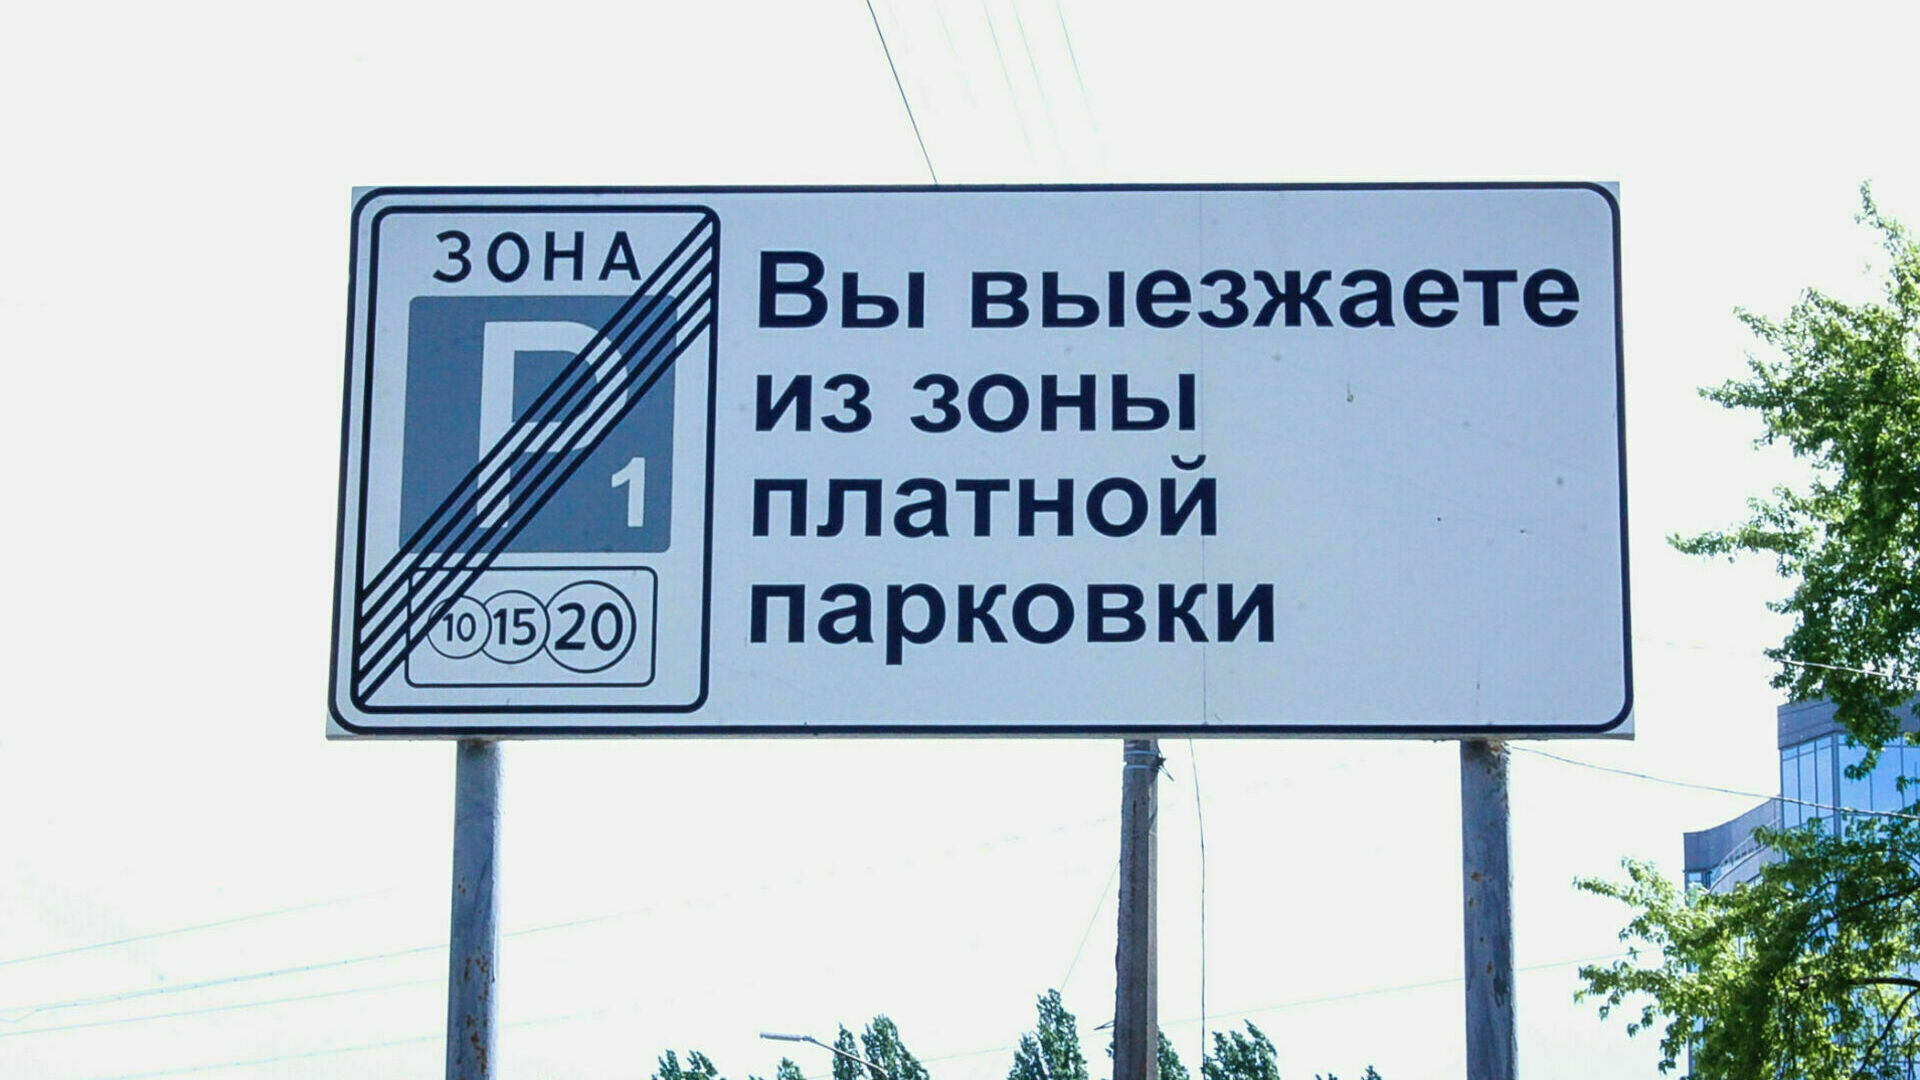 Более 700 нарушений оплаты парковок зарегистрировали в Ижевске с начала мая